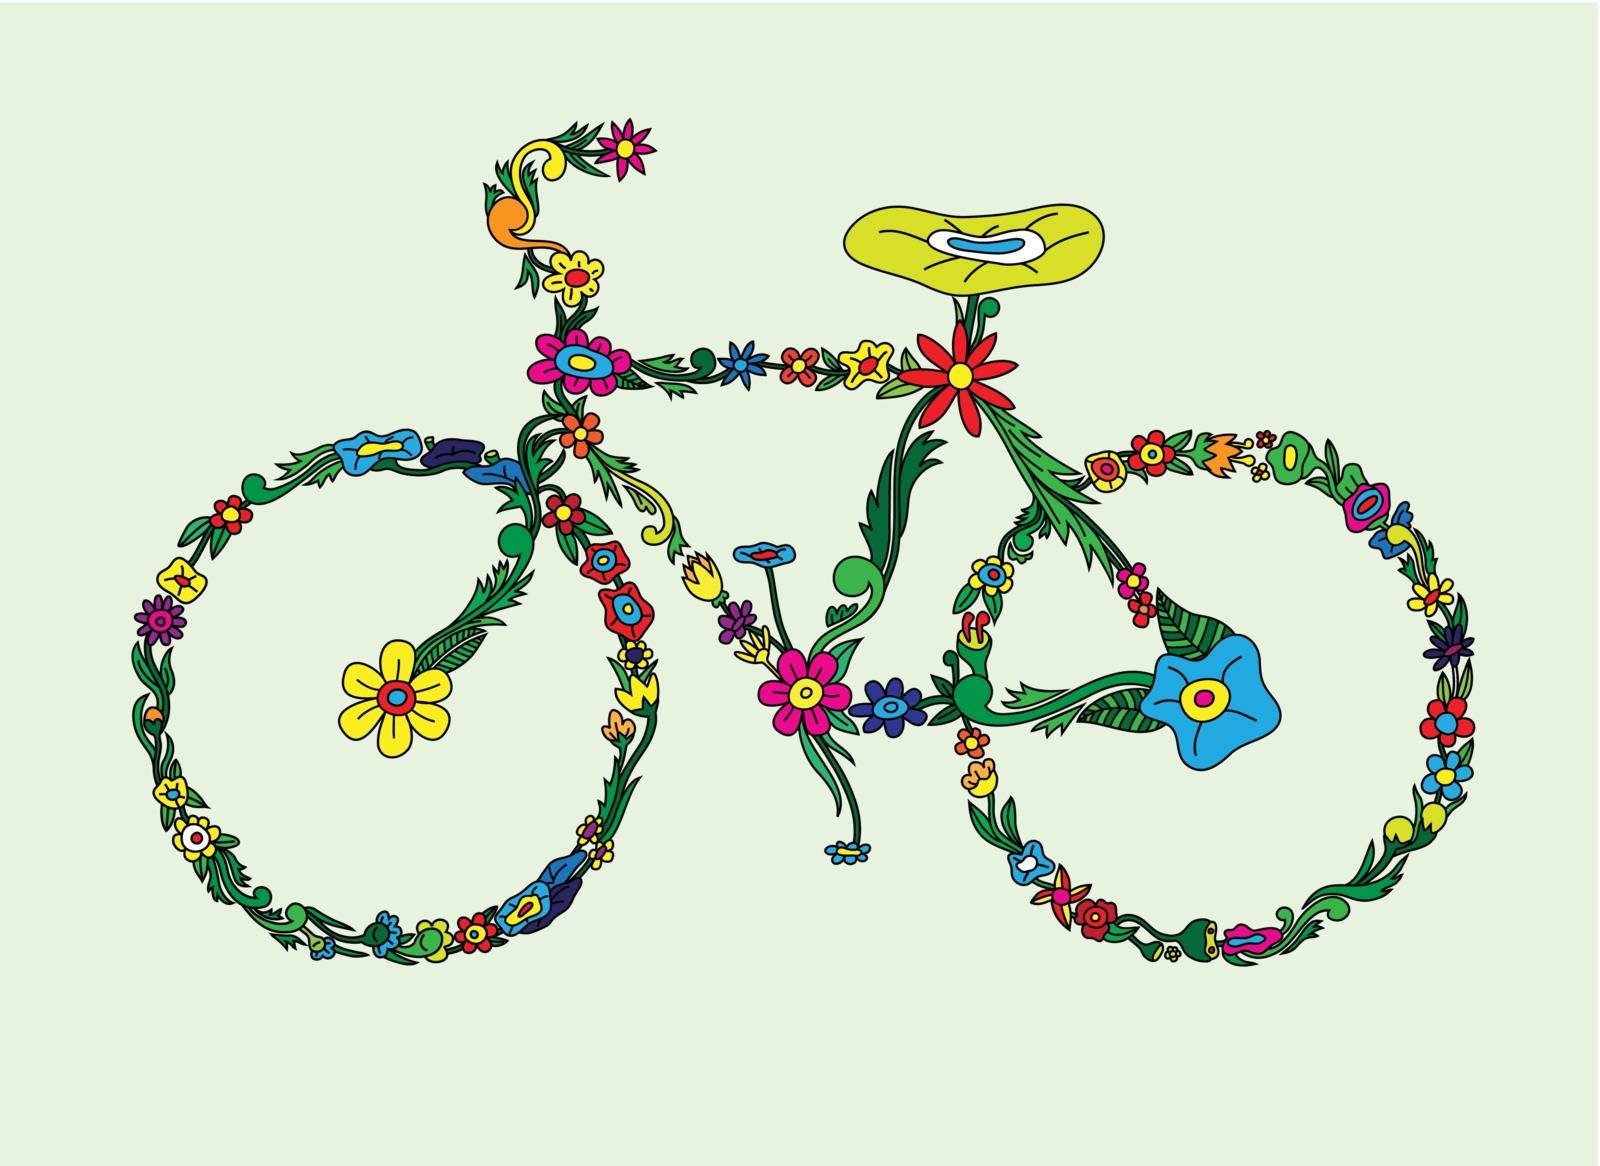 Bike flourish by martinussumbaji